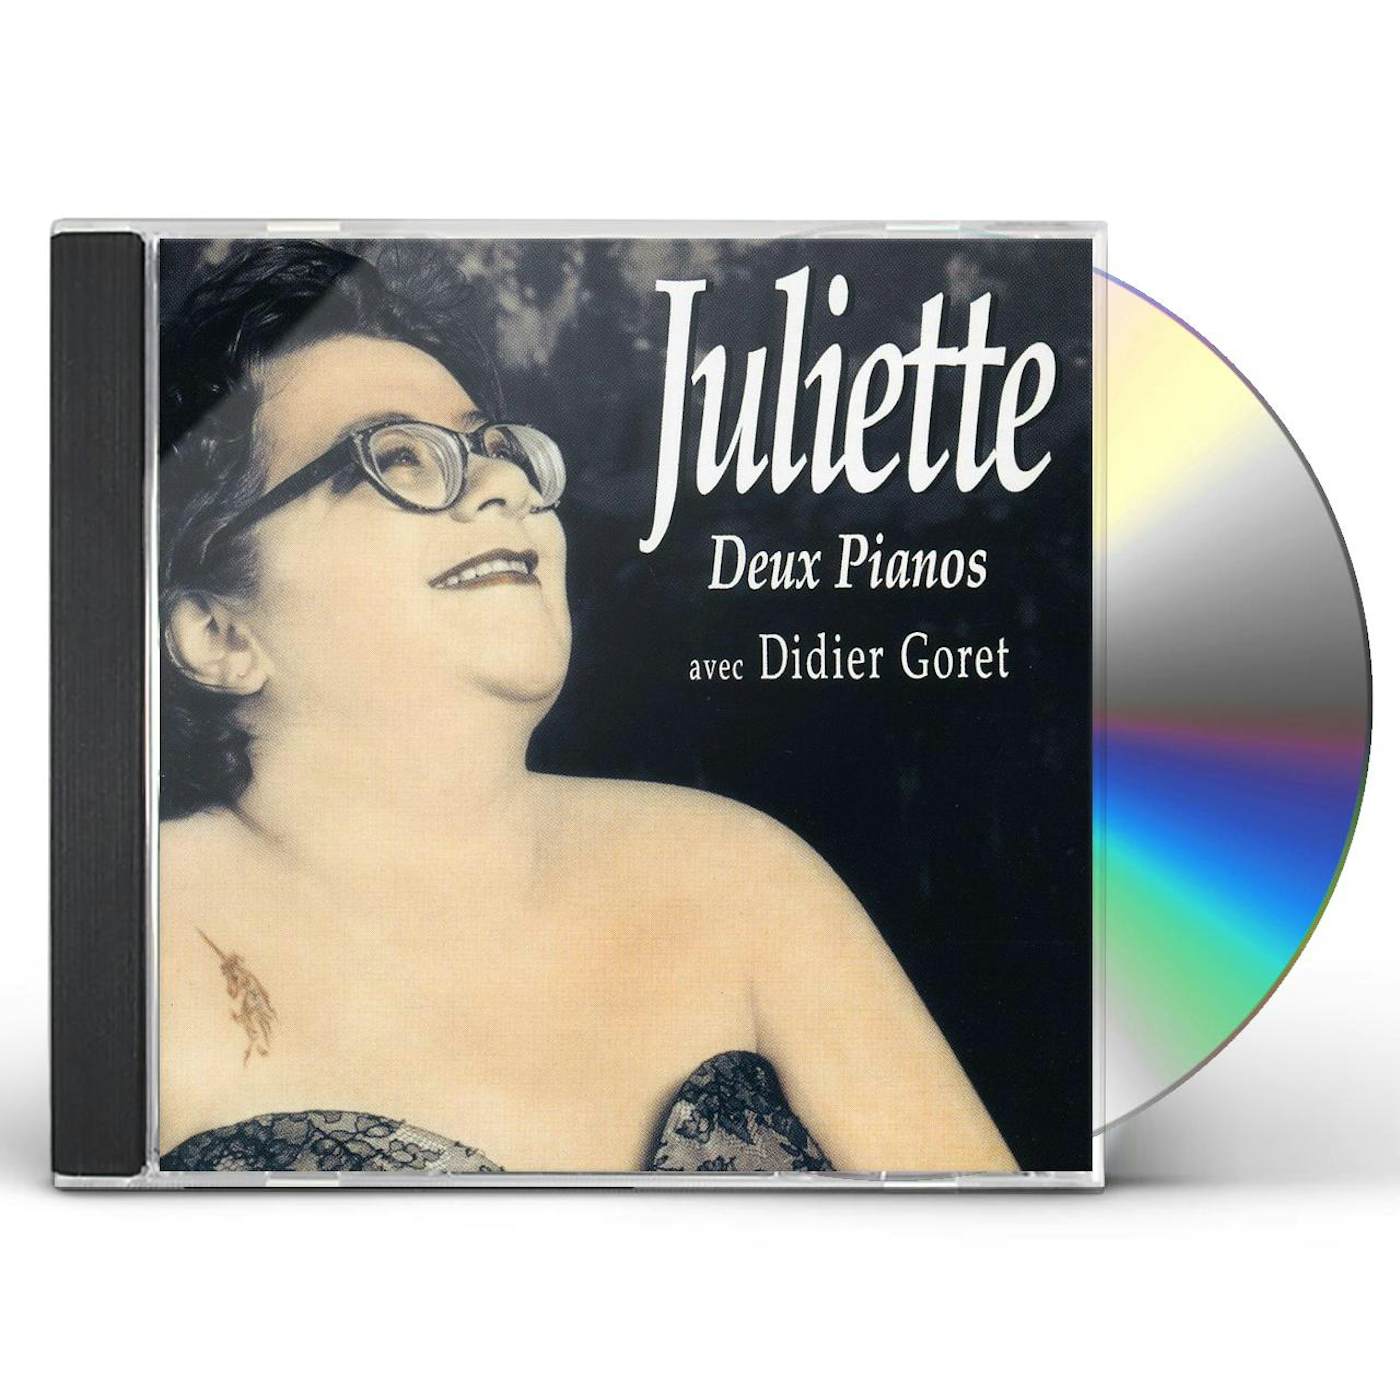 Juliette DEUX PIANOS CD